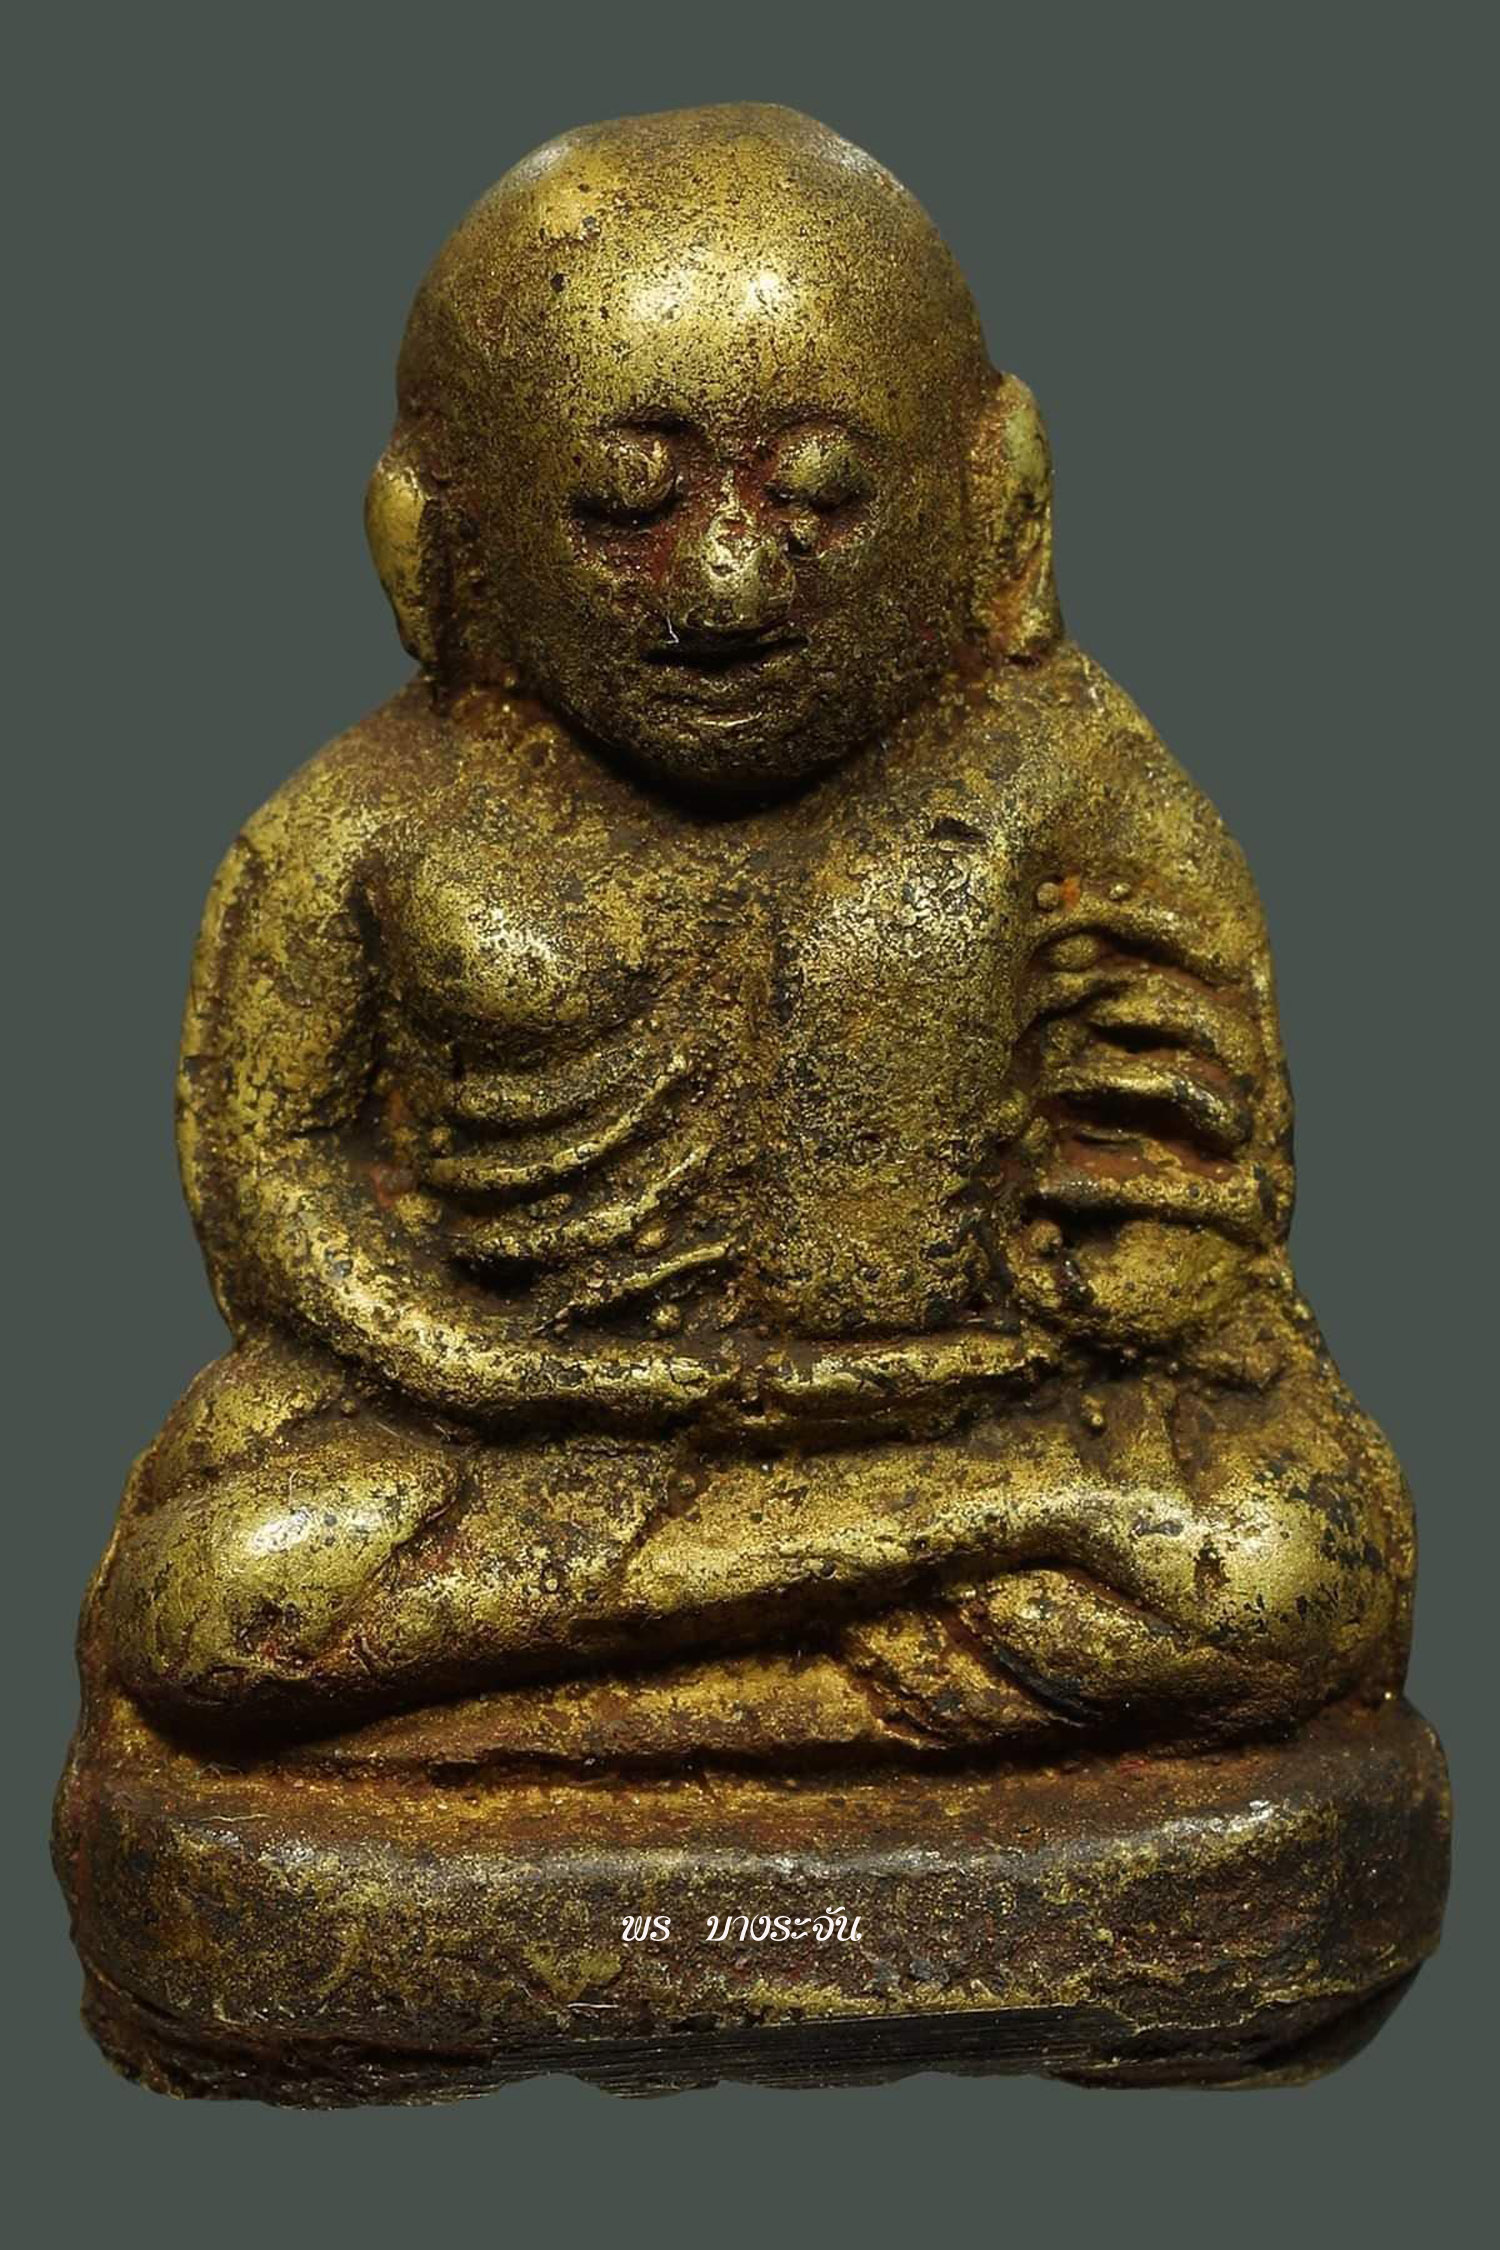 รูปหล่อหลวงพ่อเงินบางคลาน พิมพ์ขี้ตา phra lp ngern statue wat bangklan antique talisman old thai buddha amulet 銮菩银 财佛, 鑾菩銀 大師